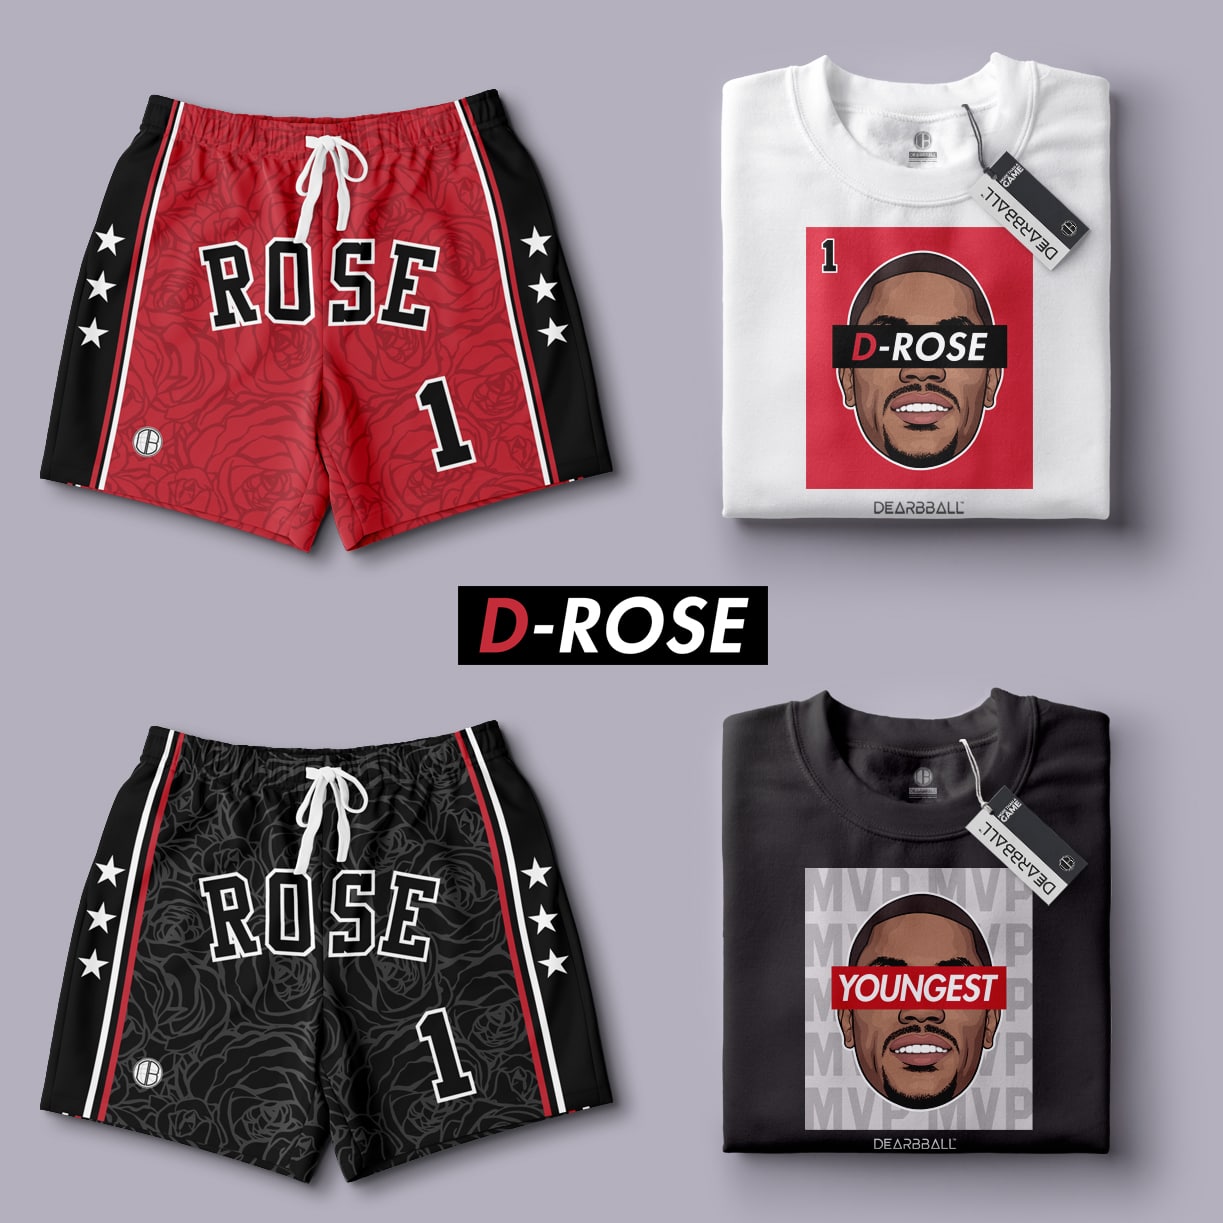 La collection D-Rose et sa saison MVP ! 🌹